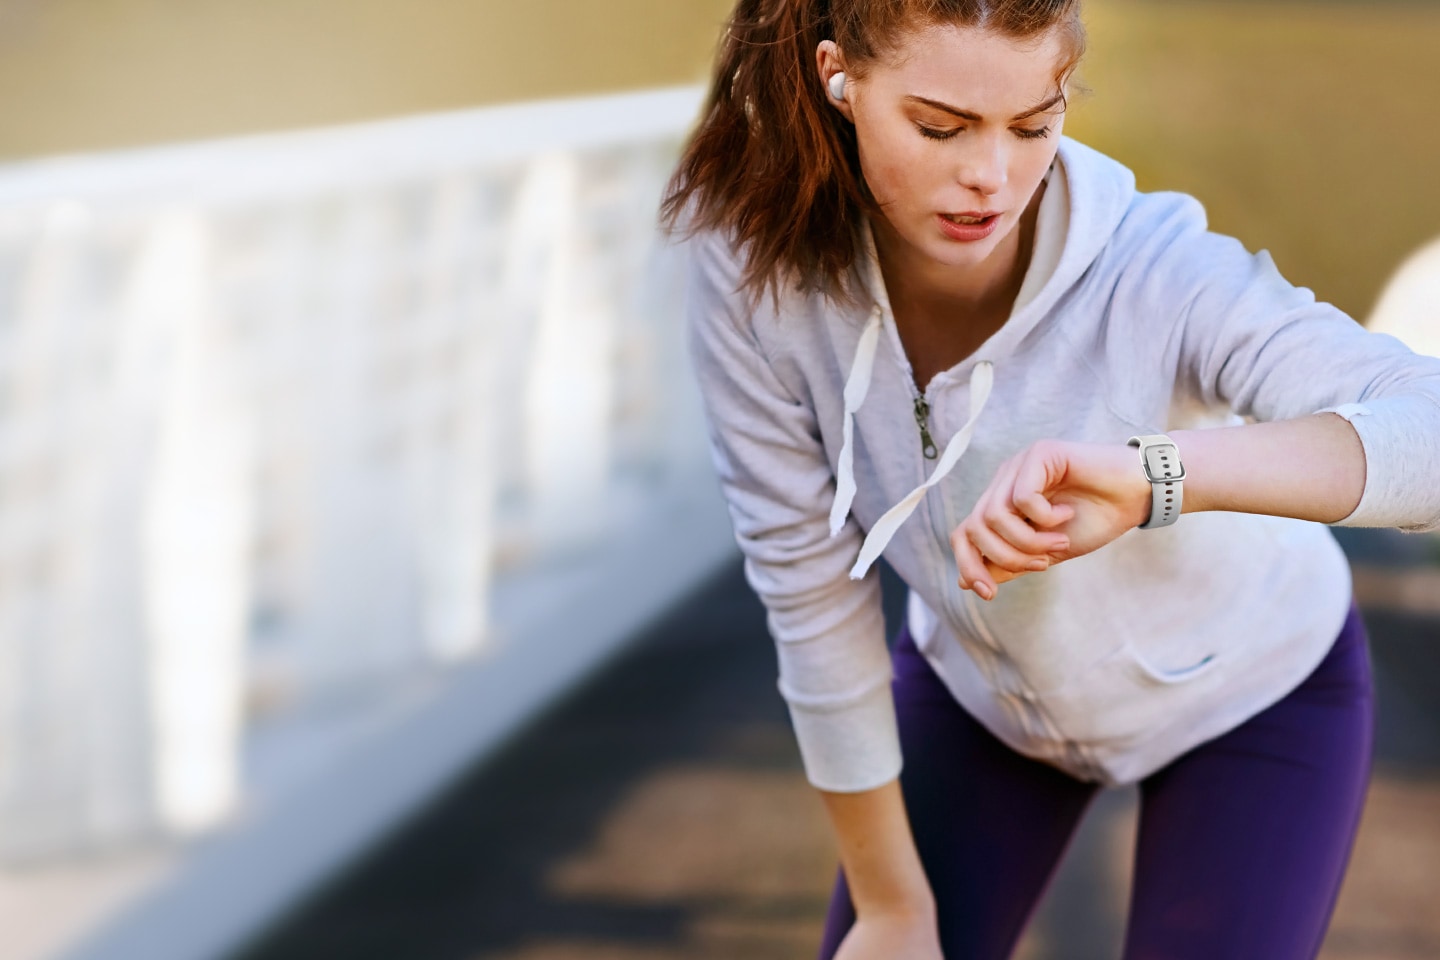 Zegarek sportowy Galaxy Watch Active pomoże Ci zadbać o swoją kondycję oraz zdrowie dając Ci dostęp do parametrów dotyczących Twojego aktualnego zdrowia i kondycji fizycznej